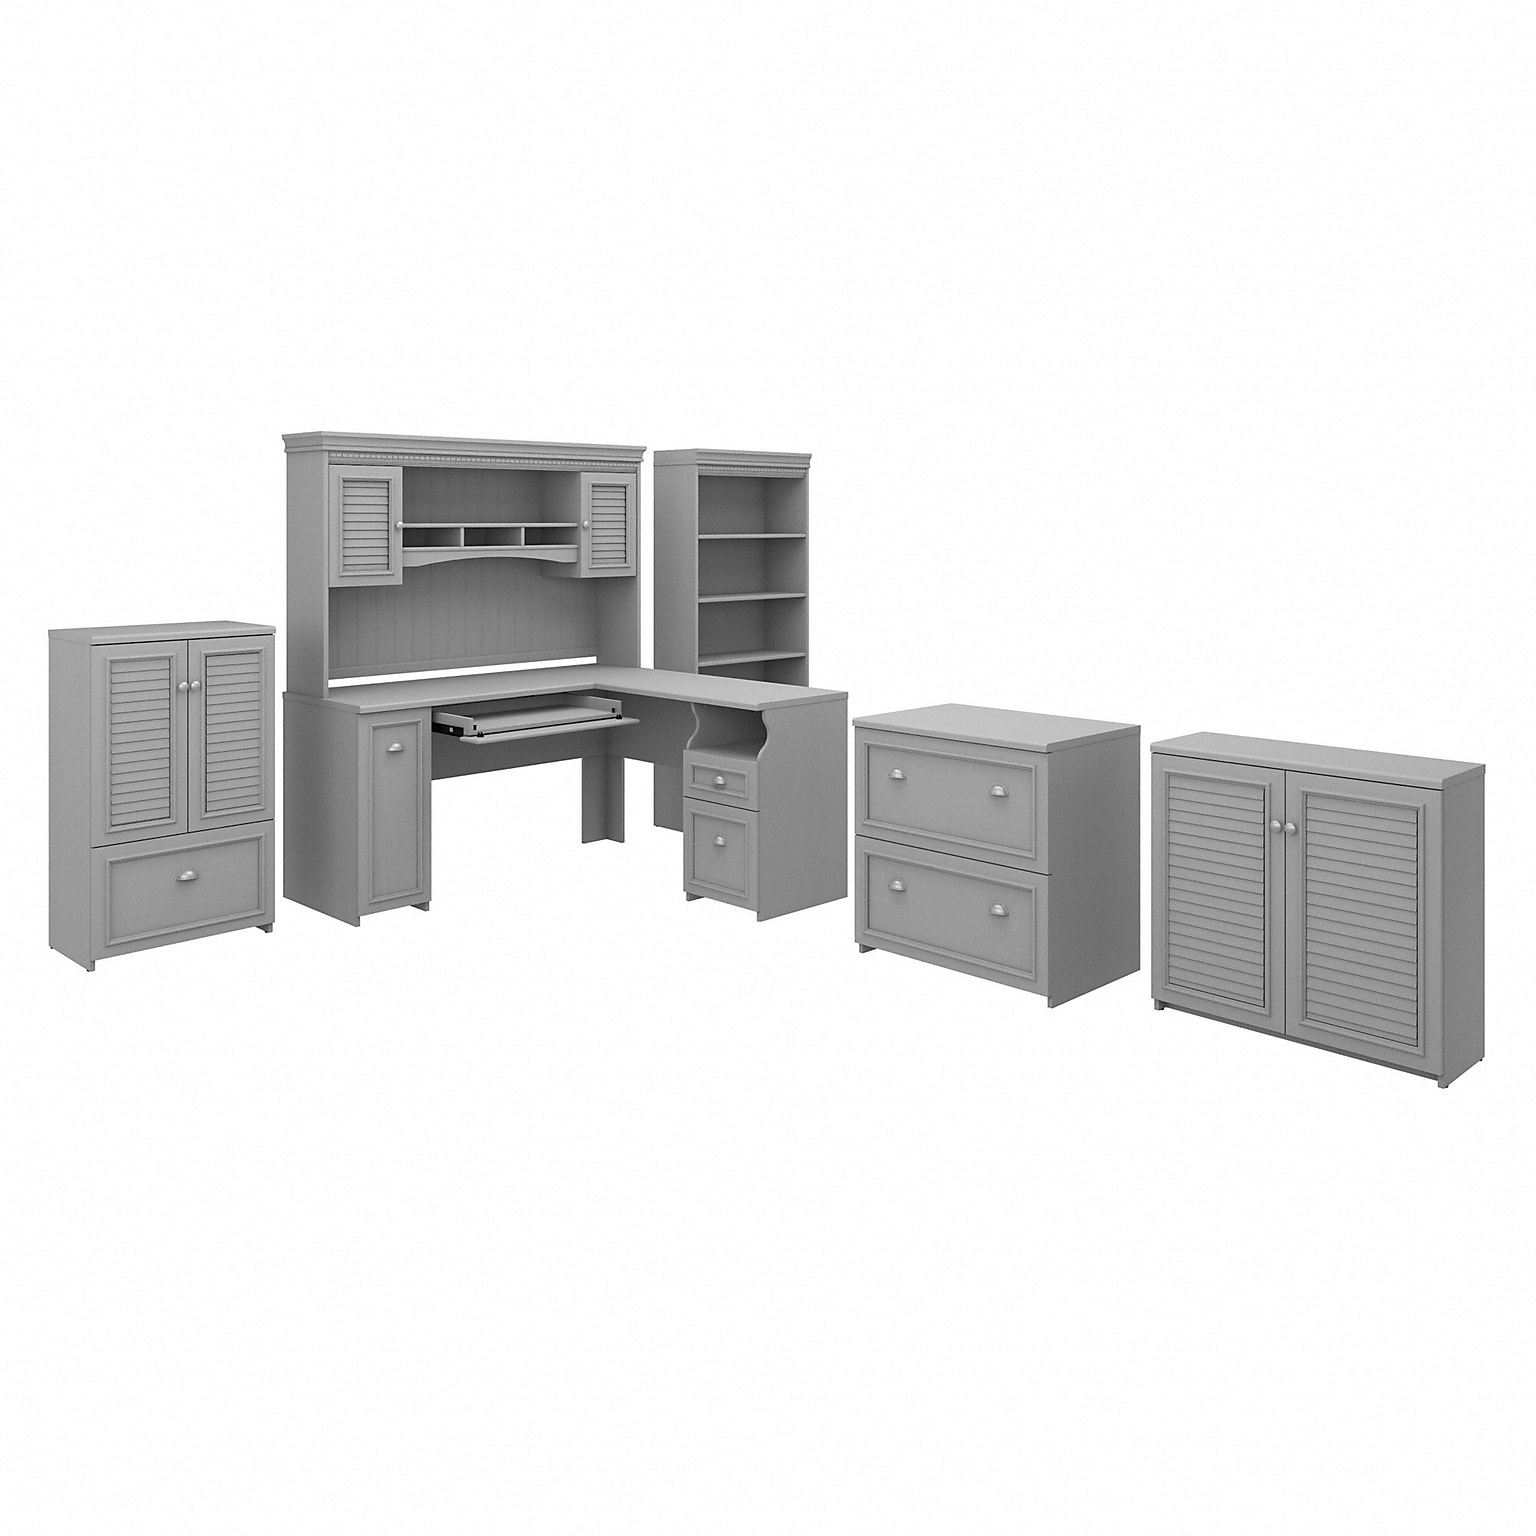 Bush Furniture Fairview 60W L Shaped Desk with Hutch, Bookcase, Storage and File Cab, Cape Cod Gray (FV014CG)